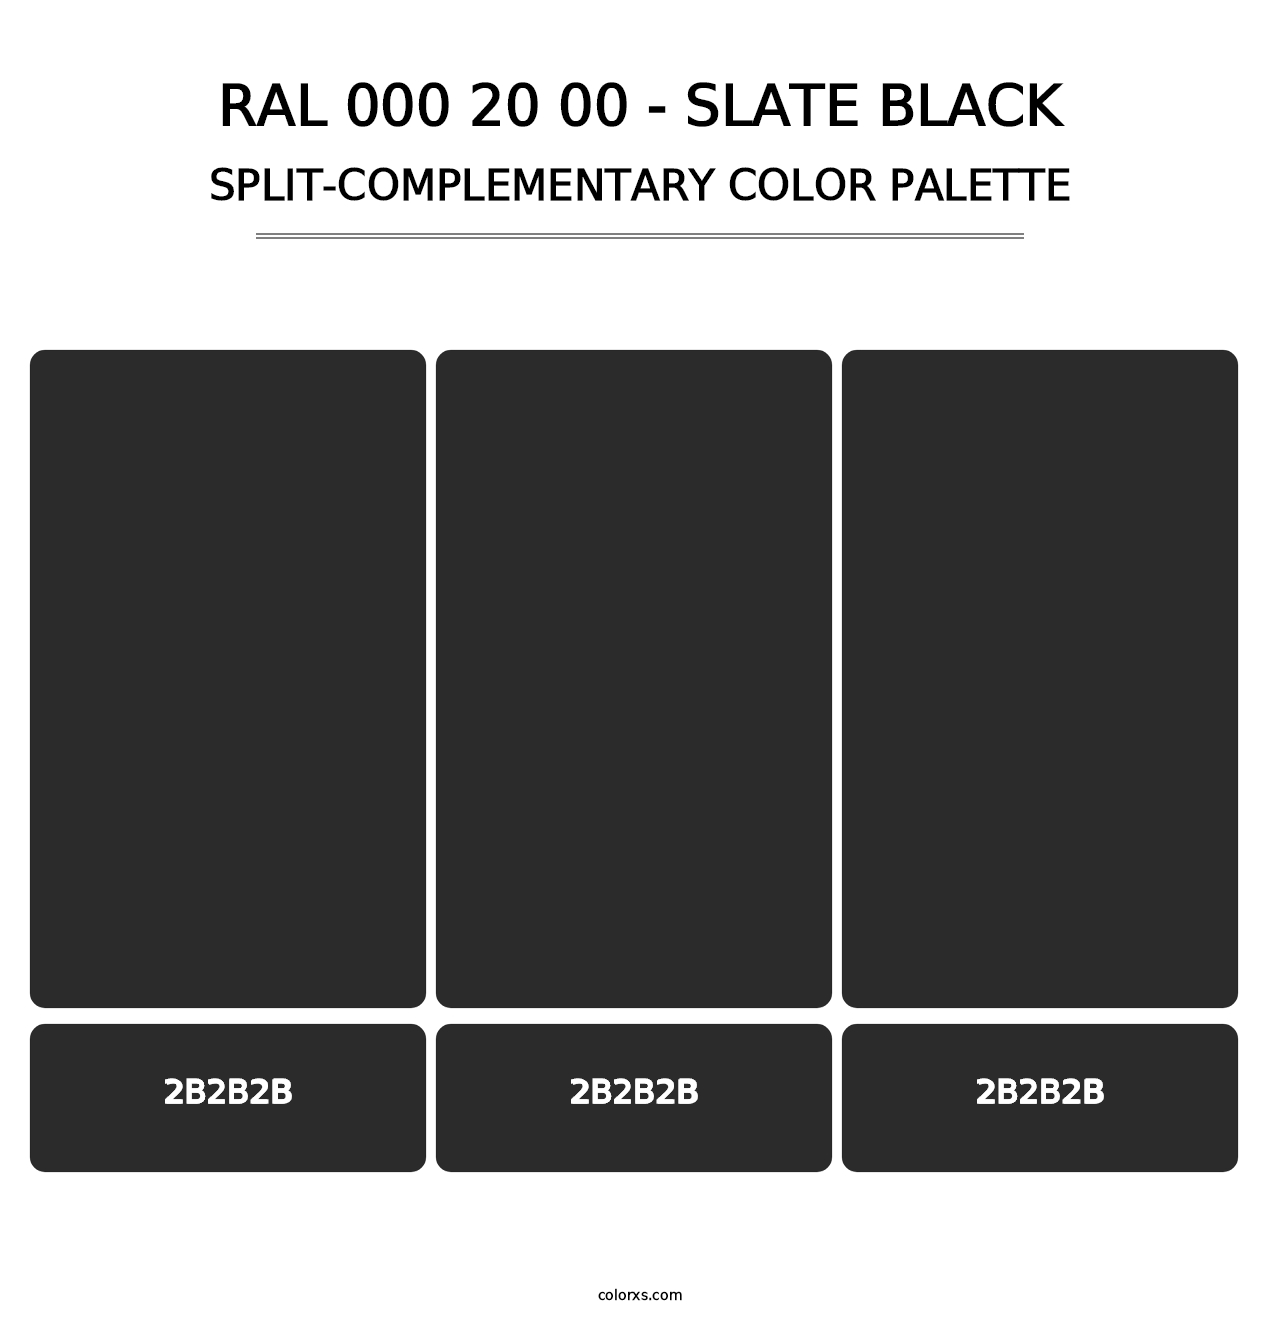 RAL 000 20 00 - Slate Black - Split-Complementary Color Palette